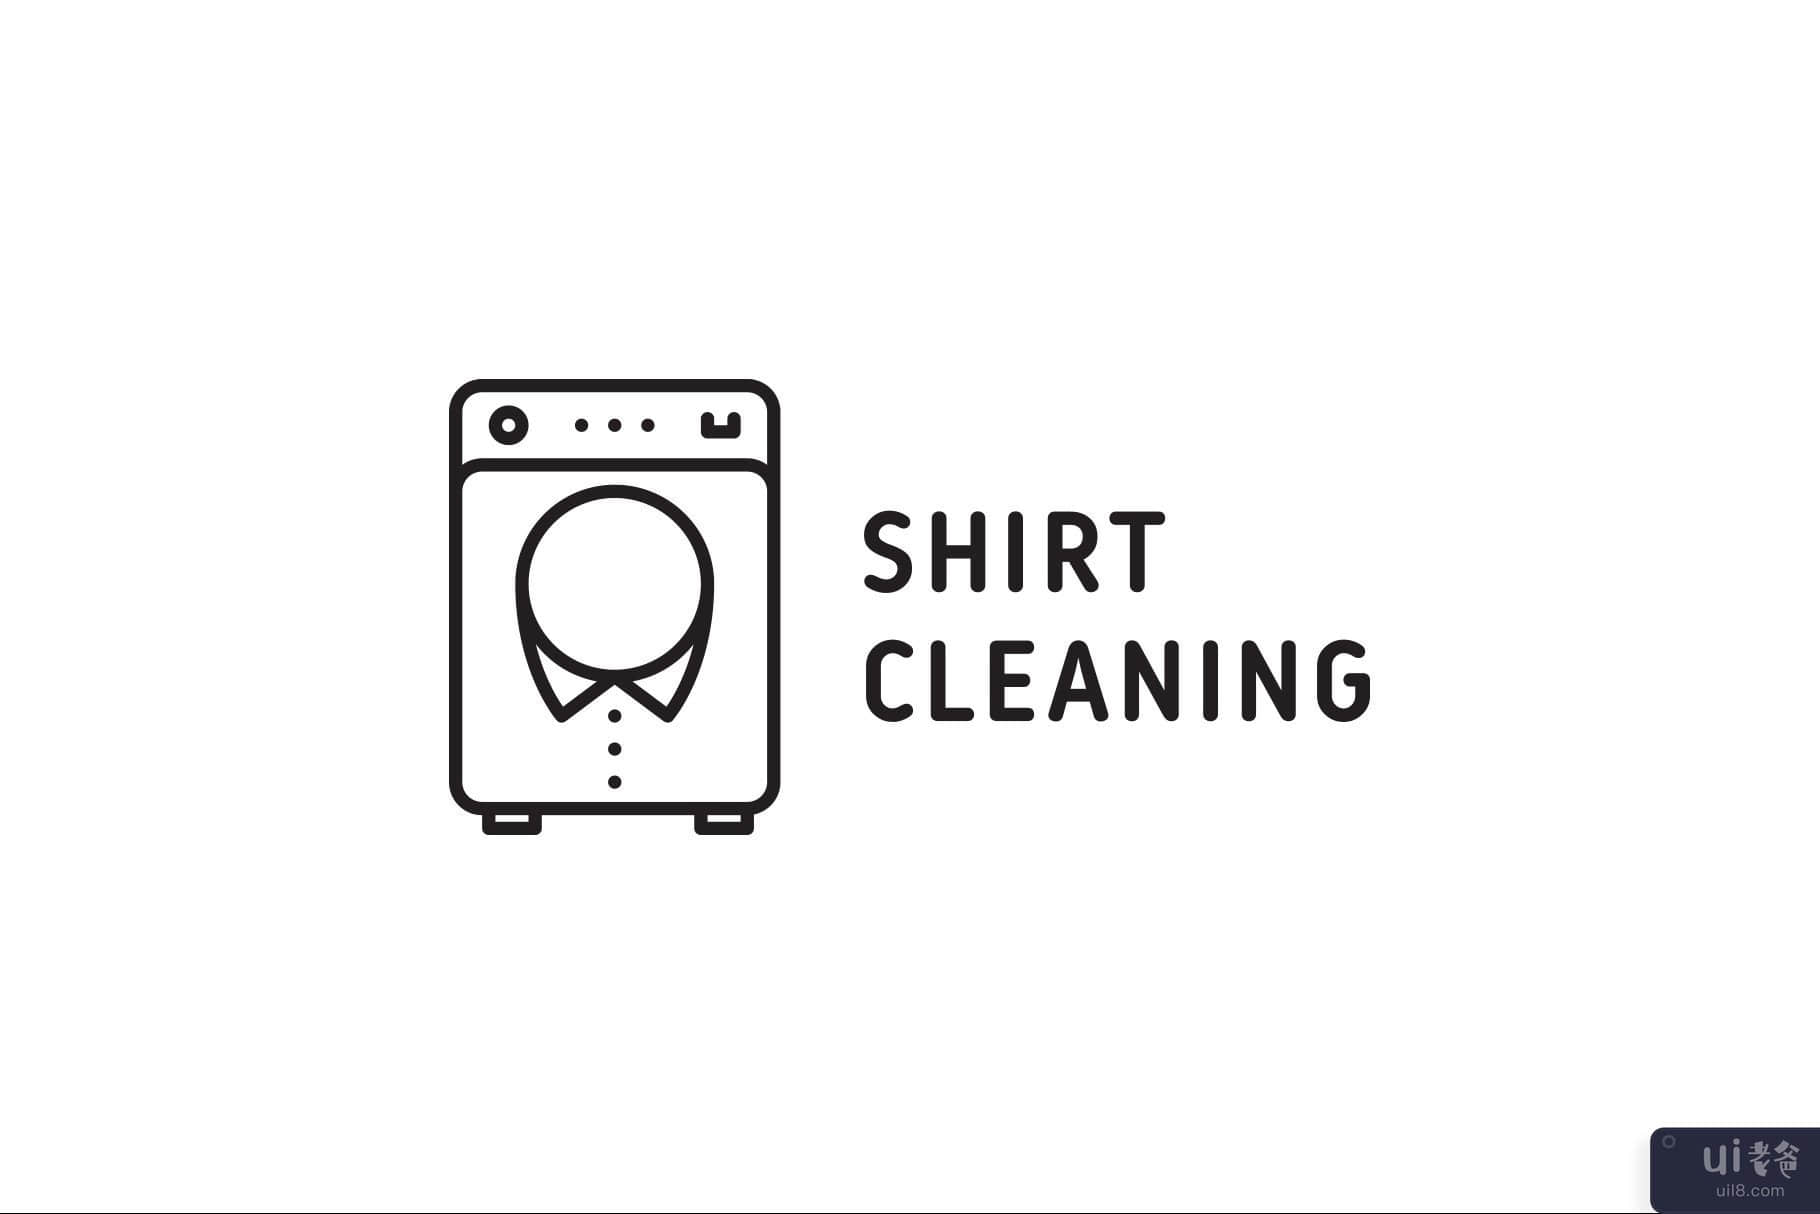 衬衫清洗机(Shirt Cleaning Washer)插图2